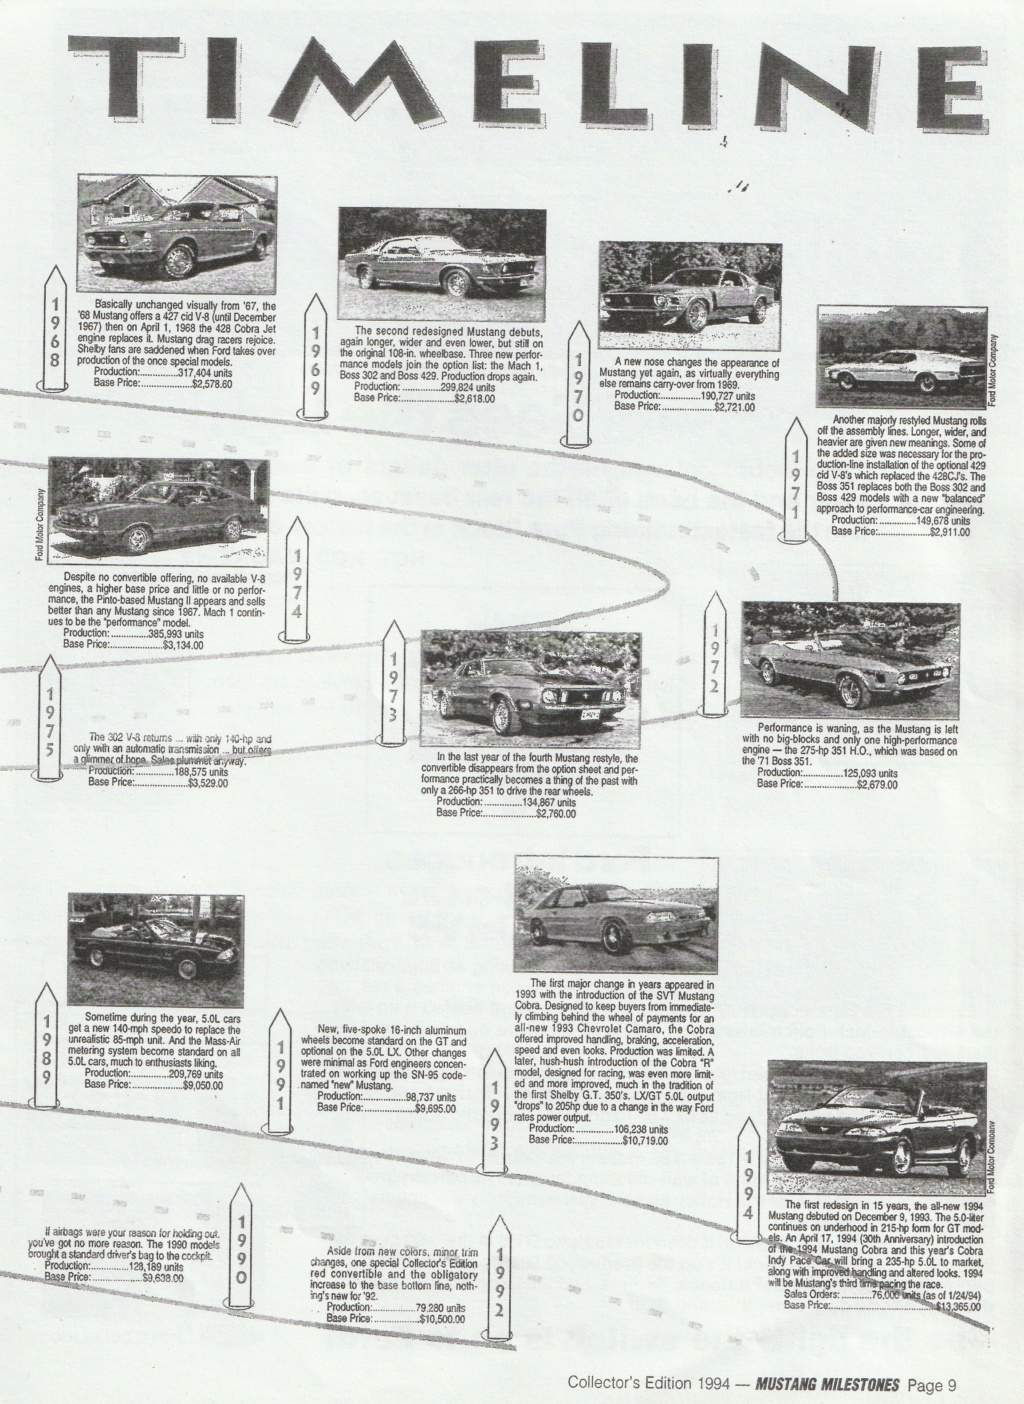 Montréal Mustang dans le temps! 1981 à aujourd'hui (Histoire en photos) - Page 8 Img_2333